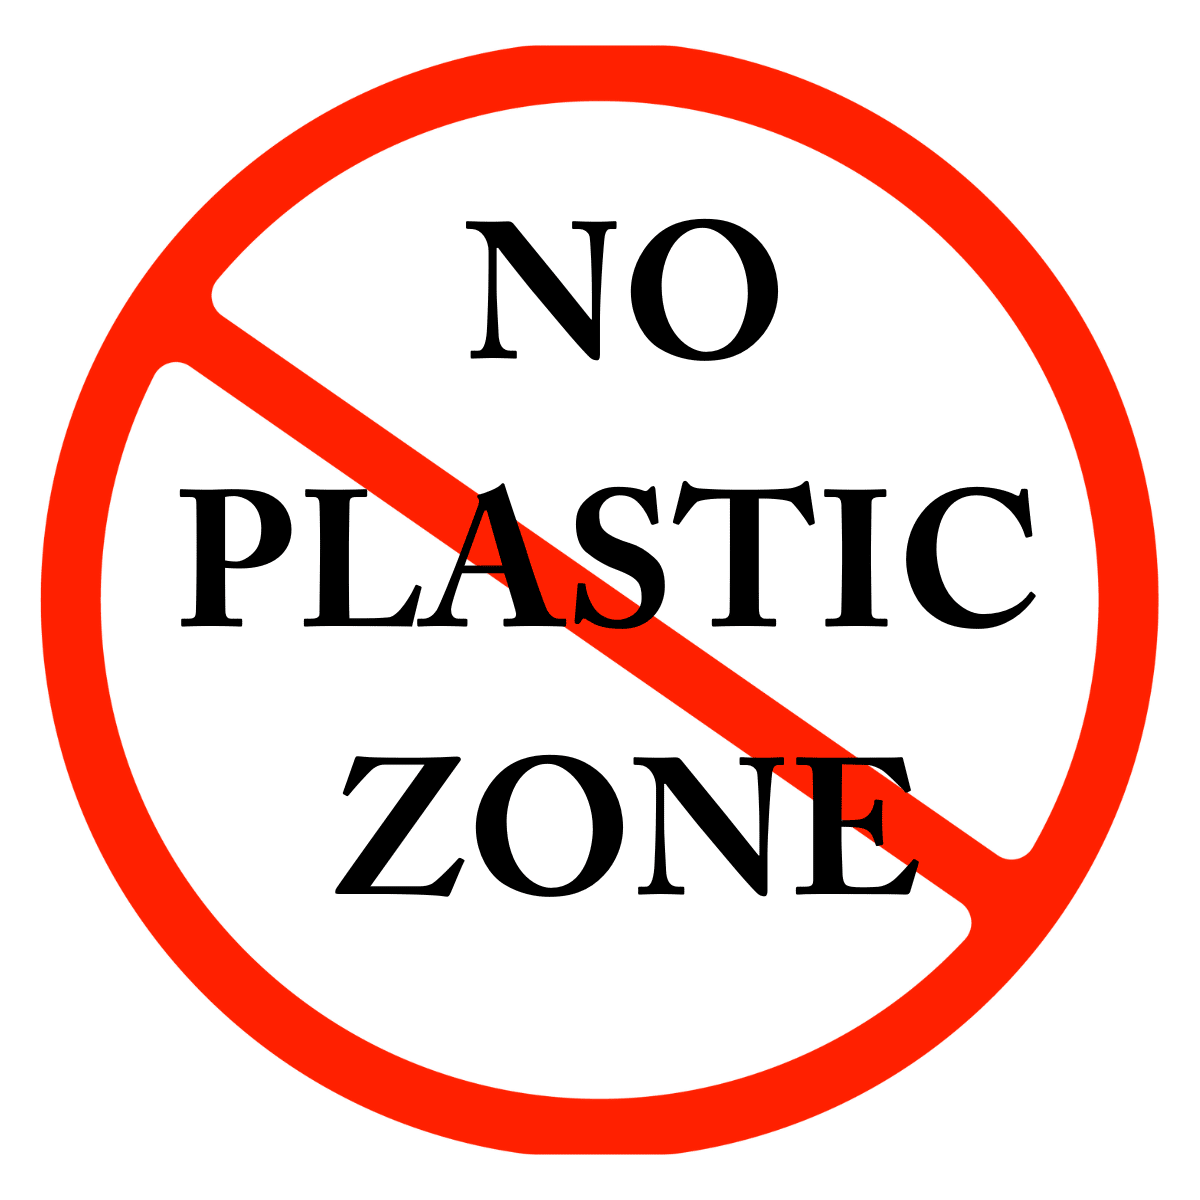 NO PLASTIC ZONE